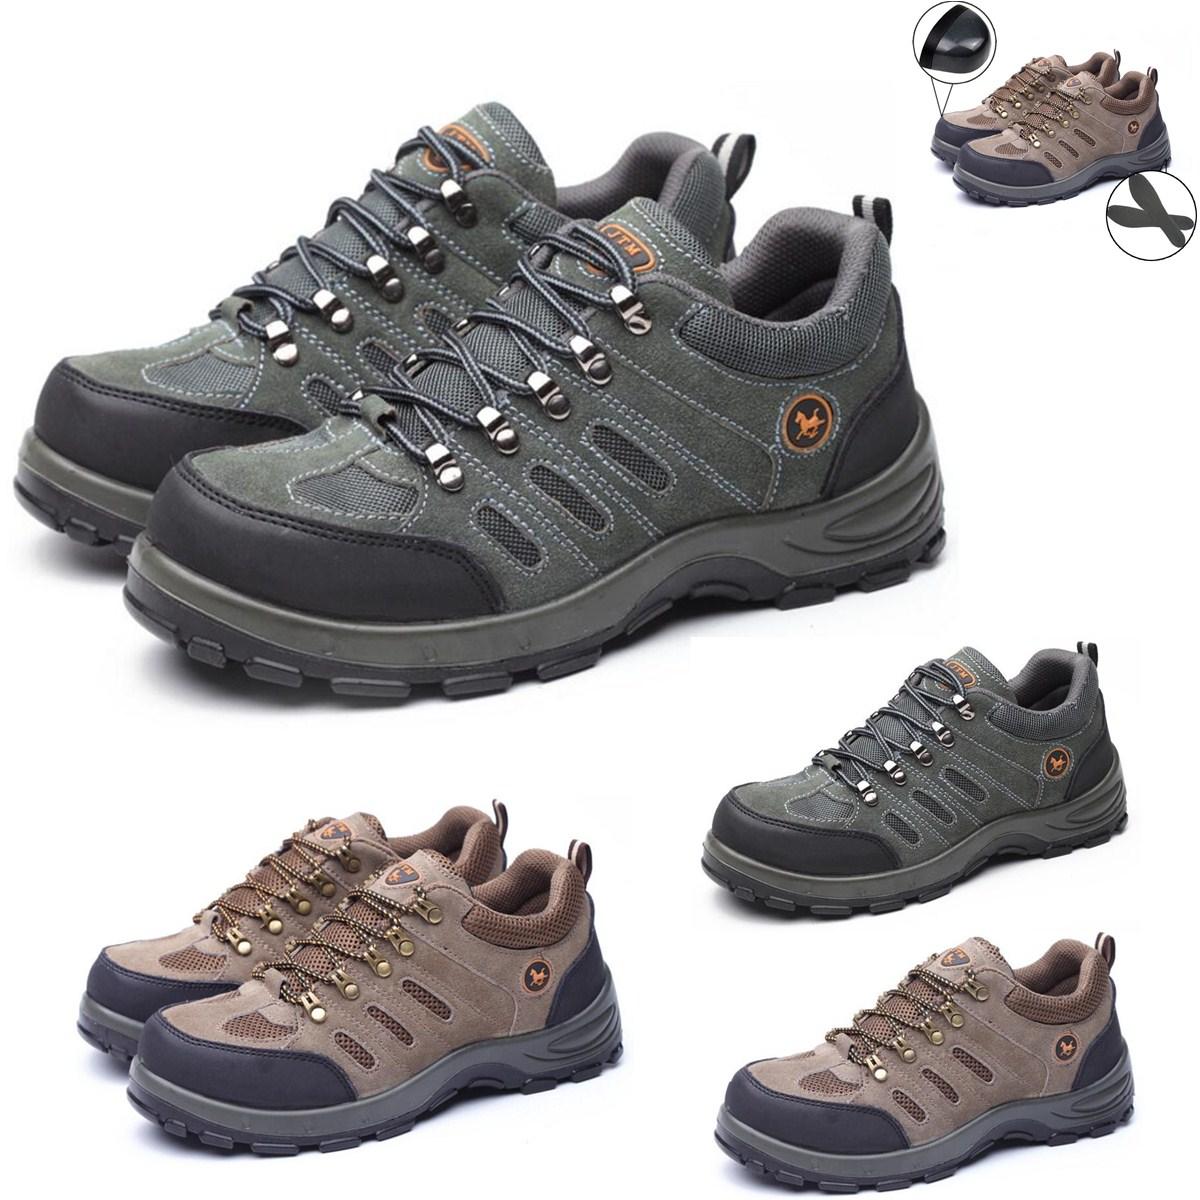 Рабочие ботинки безопасности TENGOO для мужчин с стальным носком, дышащие, для альпинизма, походов и работы на открытом воздухе.